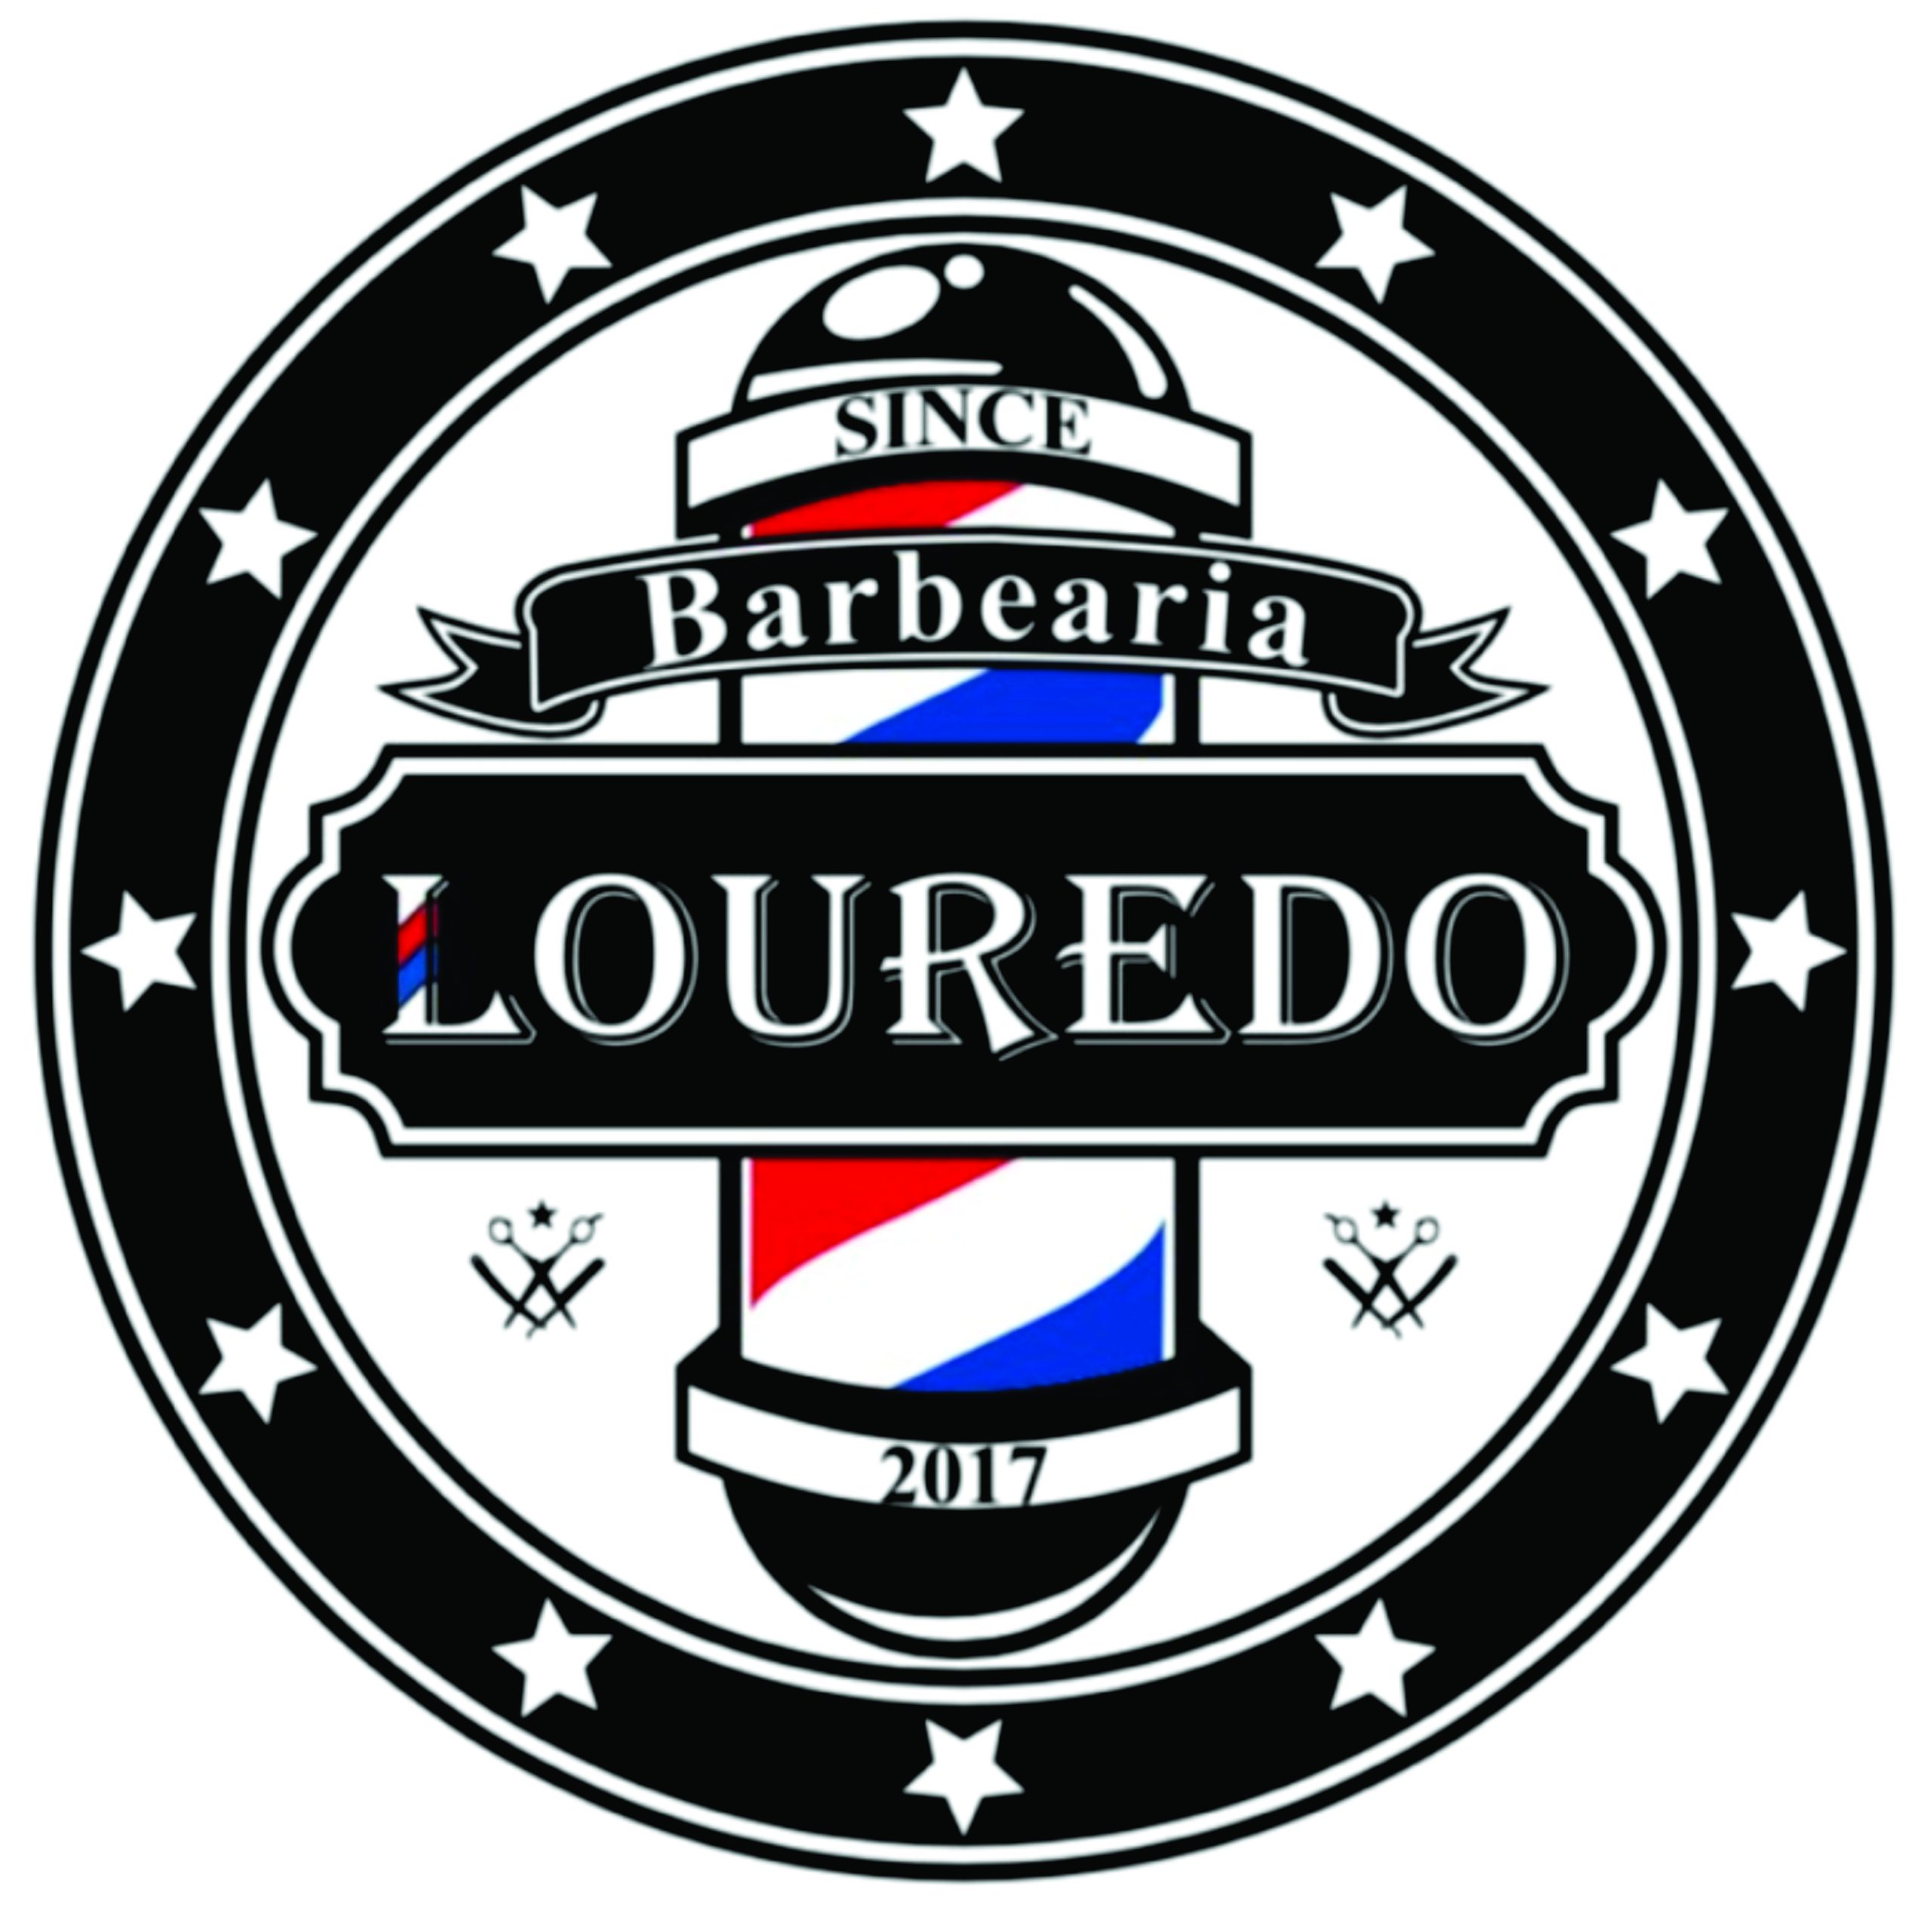 Barbearia Louredo